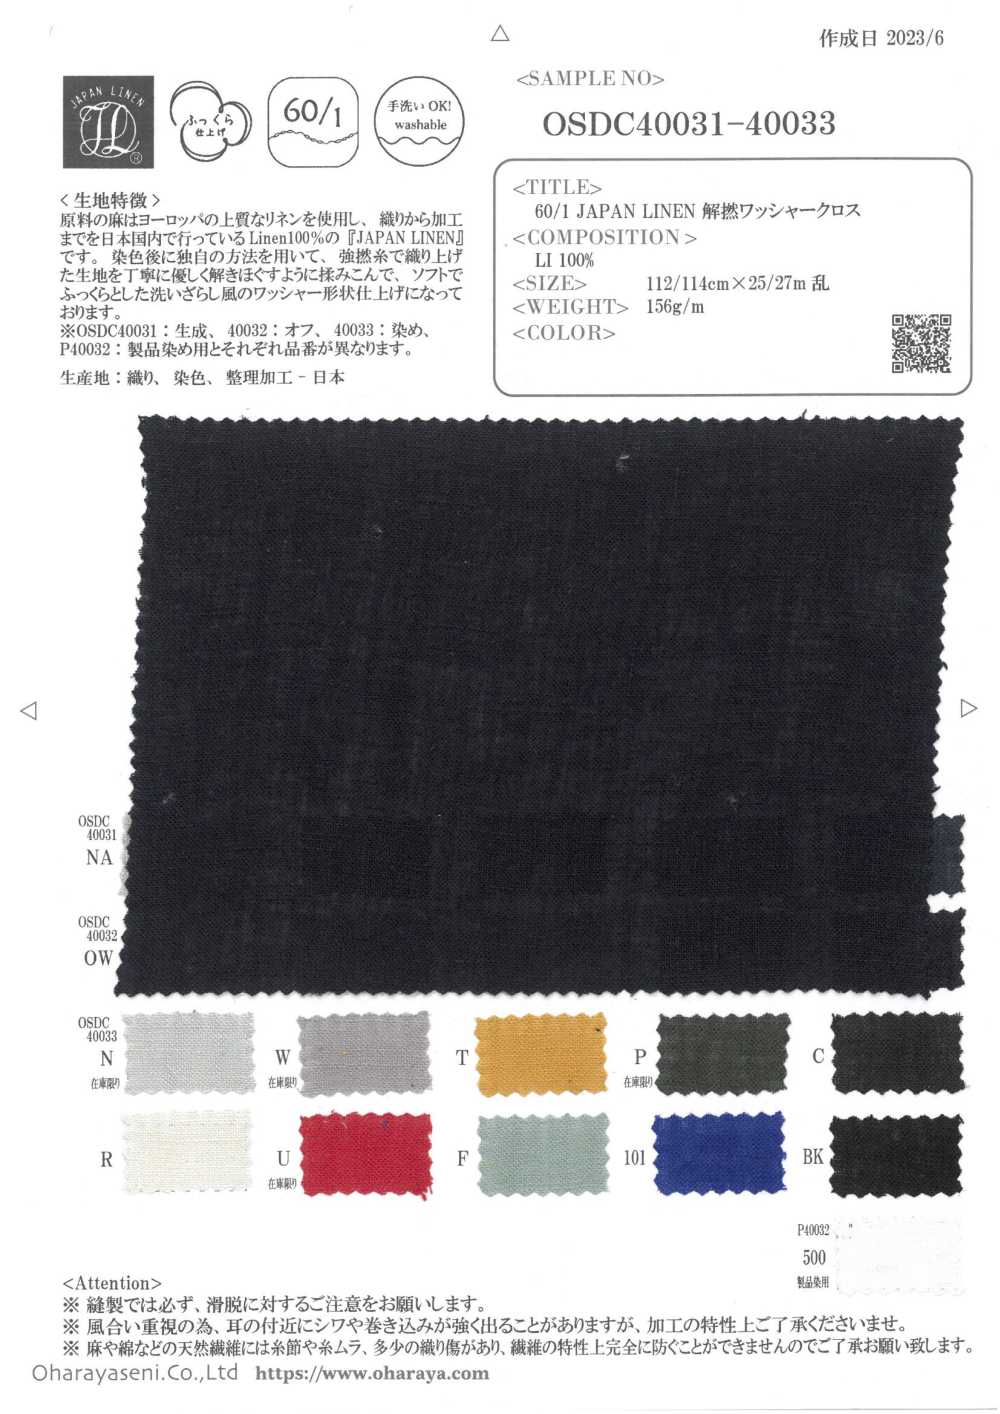 OSDC40032 Paño De Procesamiento Para Lavadora Desenroscada 60/1 JAPAN LINEN (Blanquecino)[Fabrica Textil] Oharayaseni